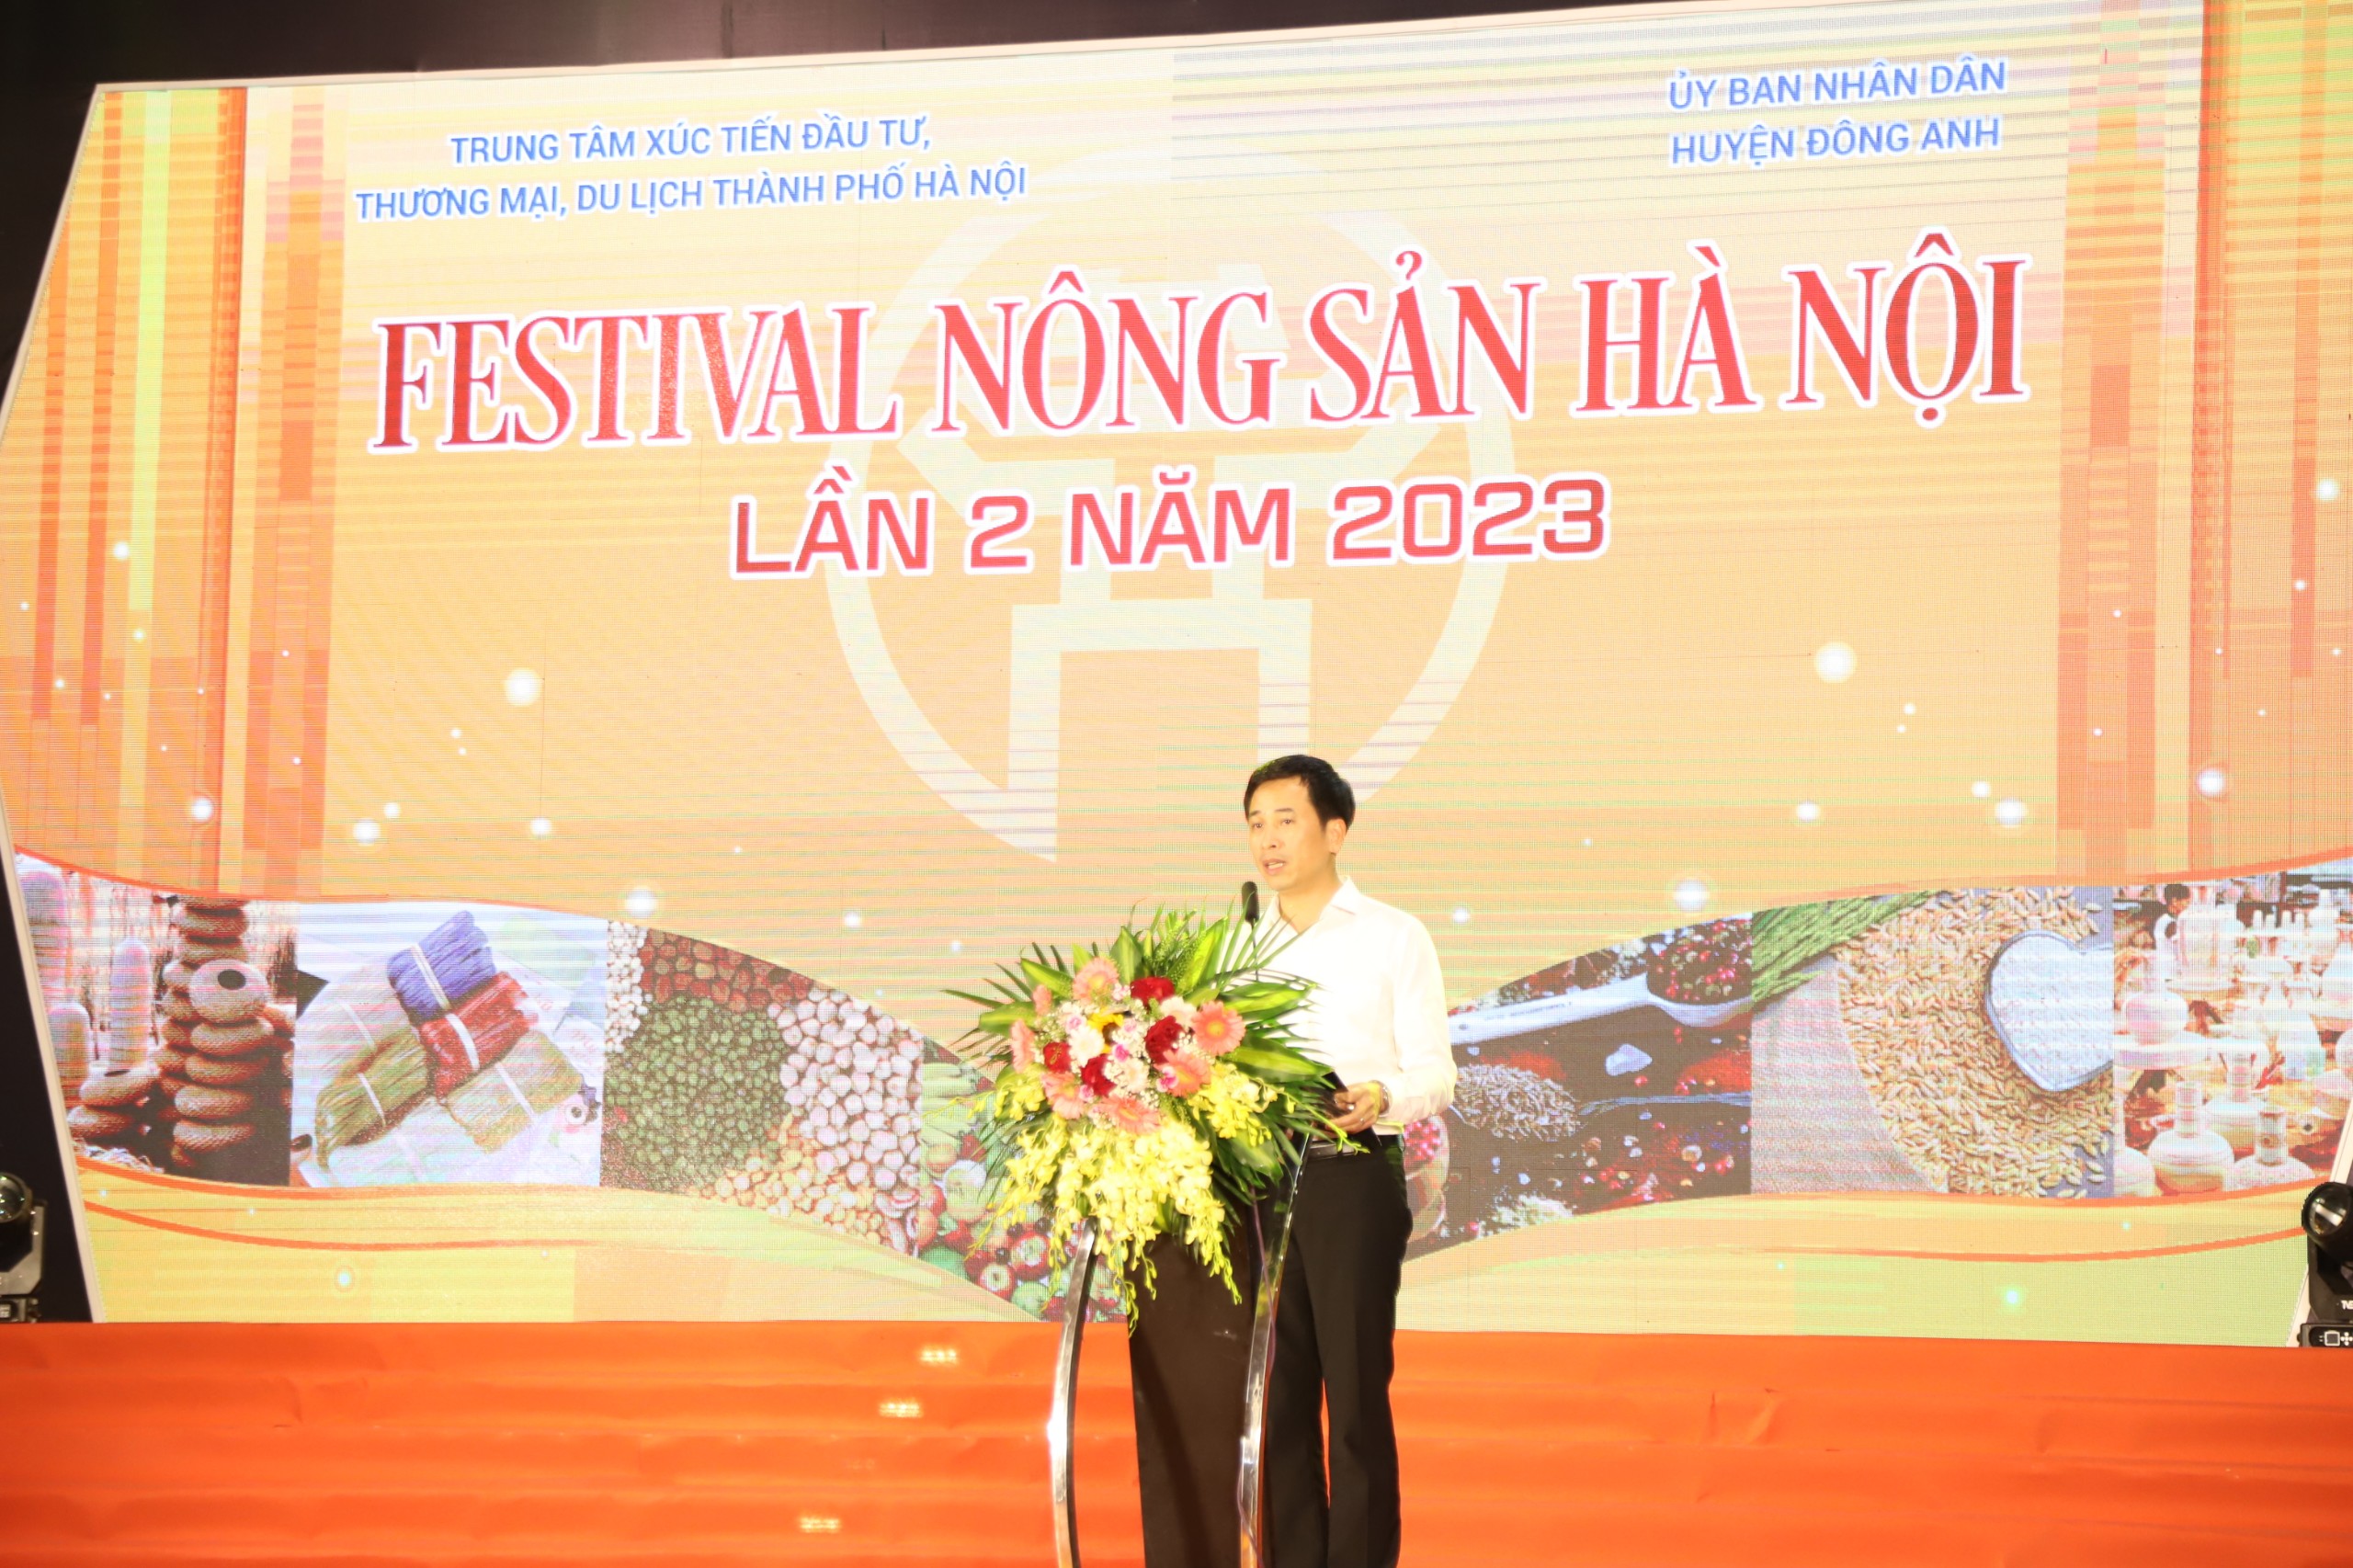 Giám đốc HPA Nguyễn Ánh Dương phát biểu khai mạc Festival